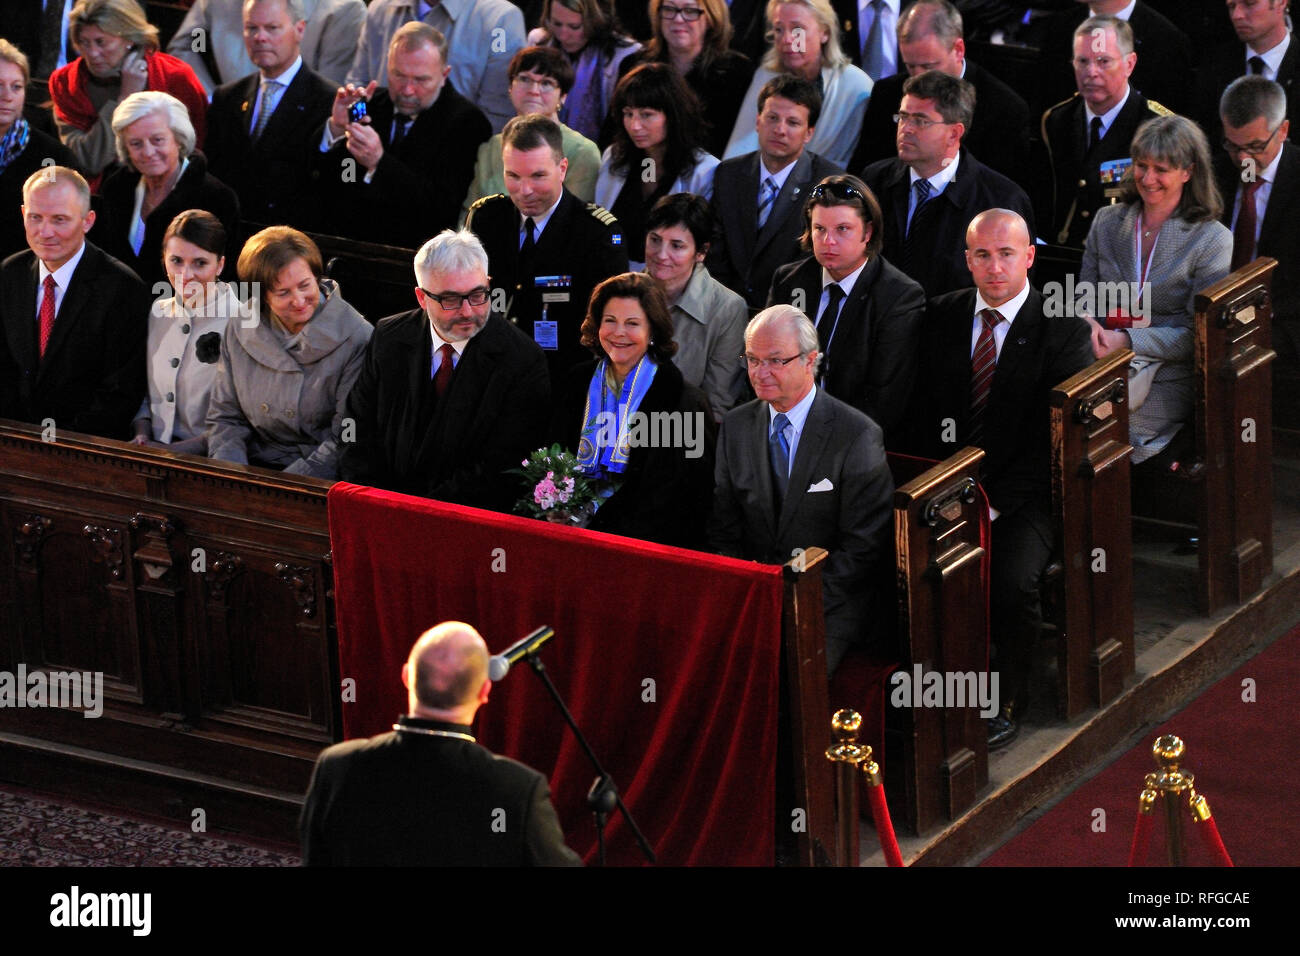 La reine Silvia le roi Carl XVI Gustaf de Suède et la reine Silvia de Suède photo Kazimierz Jurewicz Banque D'Images